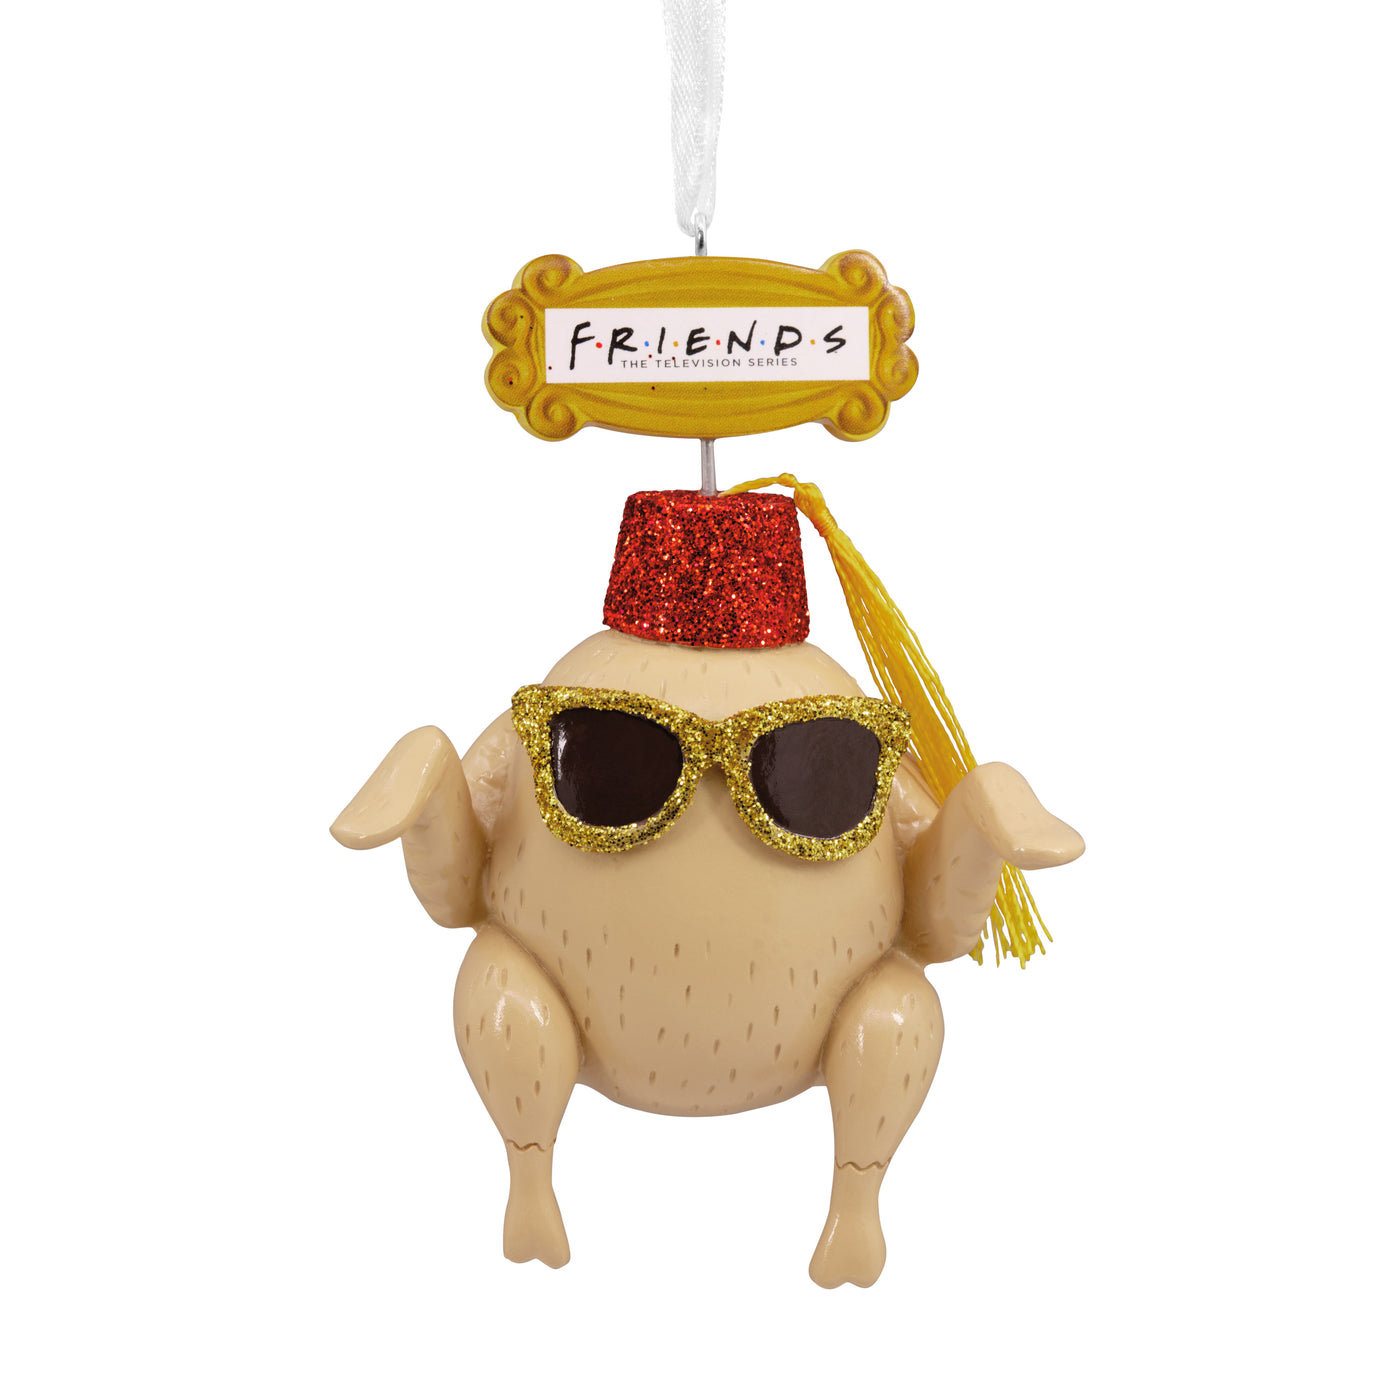 Friends - Turkey Ornament